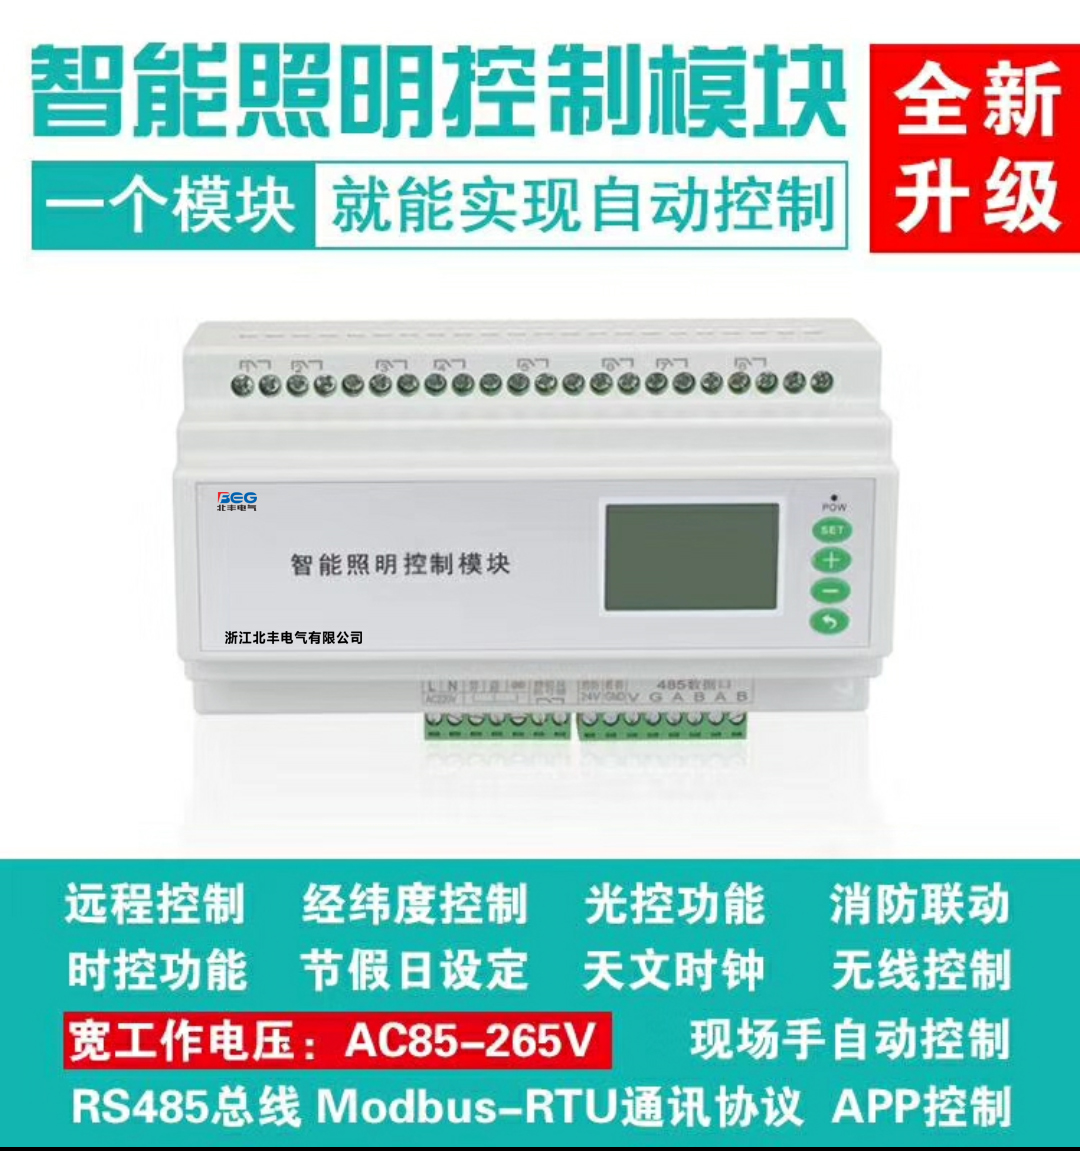 NXN512/11-6 SV/S4.16.6.1型6路16A智能照明控制模块GF-LCS6008-NCC灯光控制器